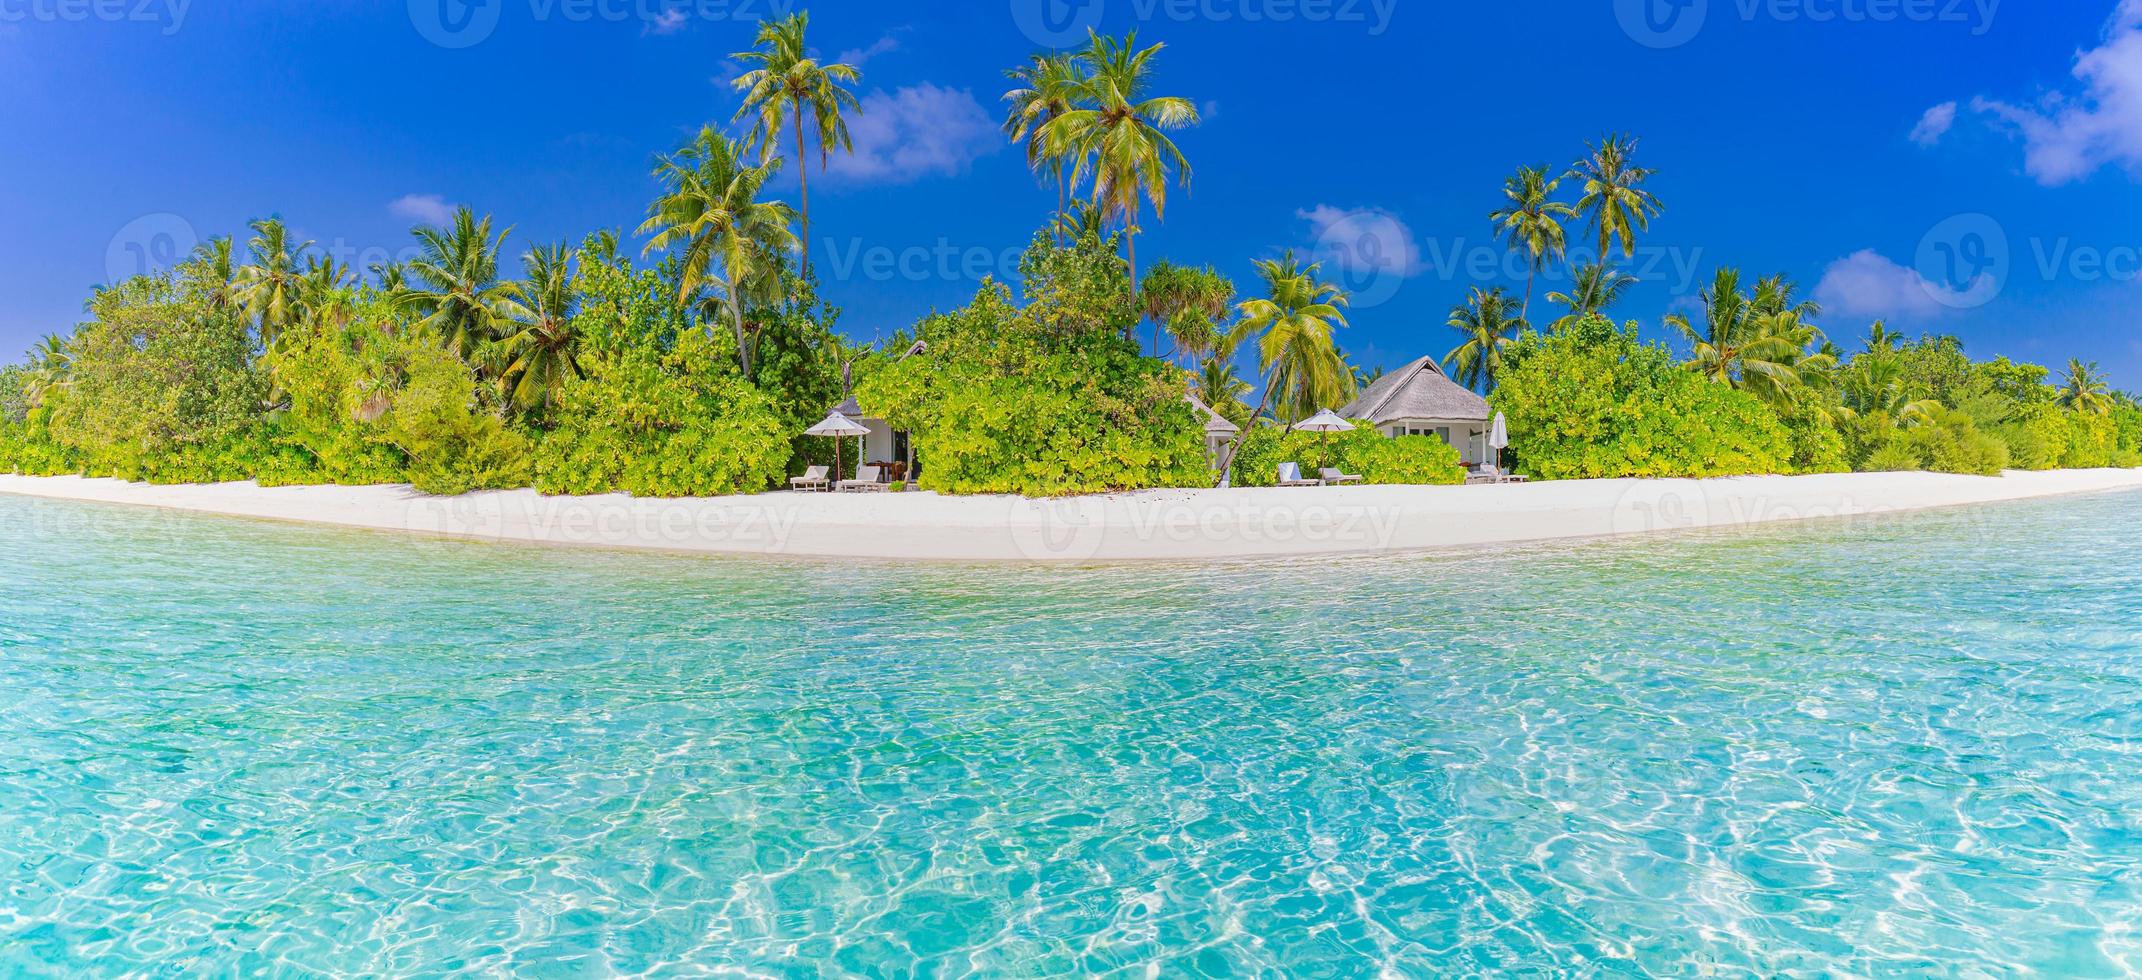 erstaunliche panoramalandschaft des maledivenstrandes. tropische strandlandschaft seelandschaft, luxusresort. exotisches reiseziel, palmen, weißer sand, meerwasser für sommerferienferienkonzept foto